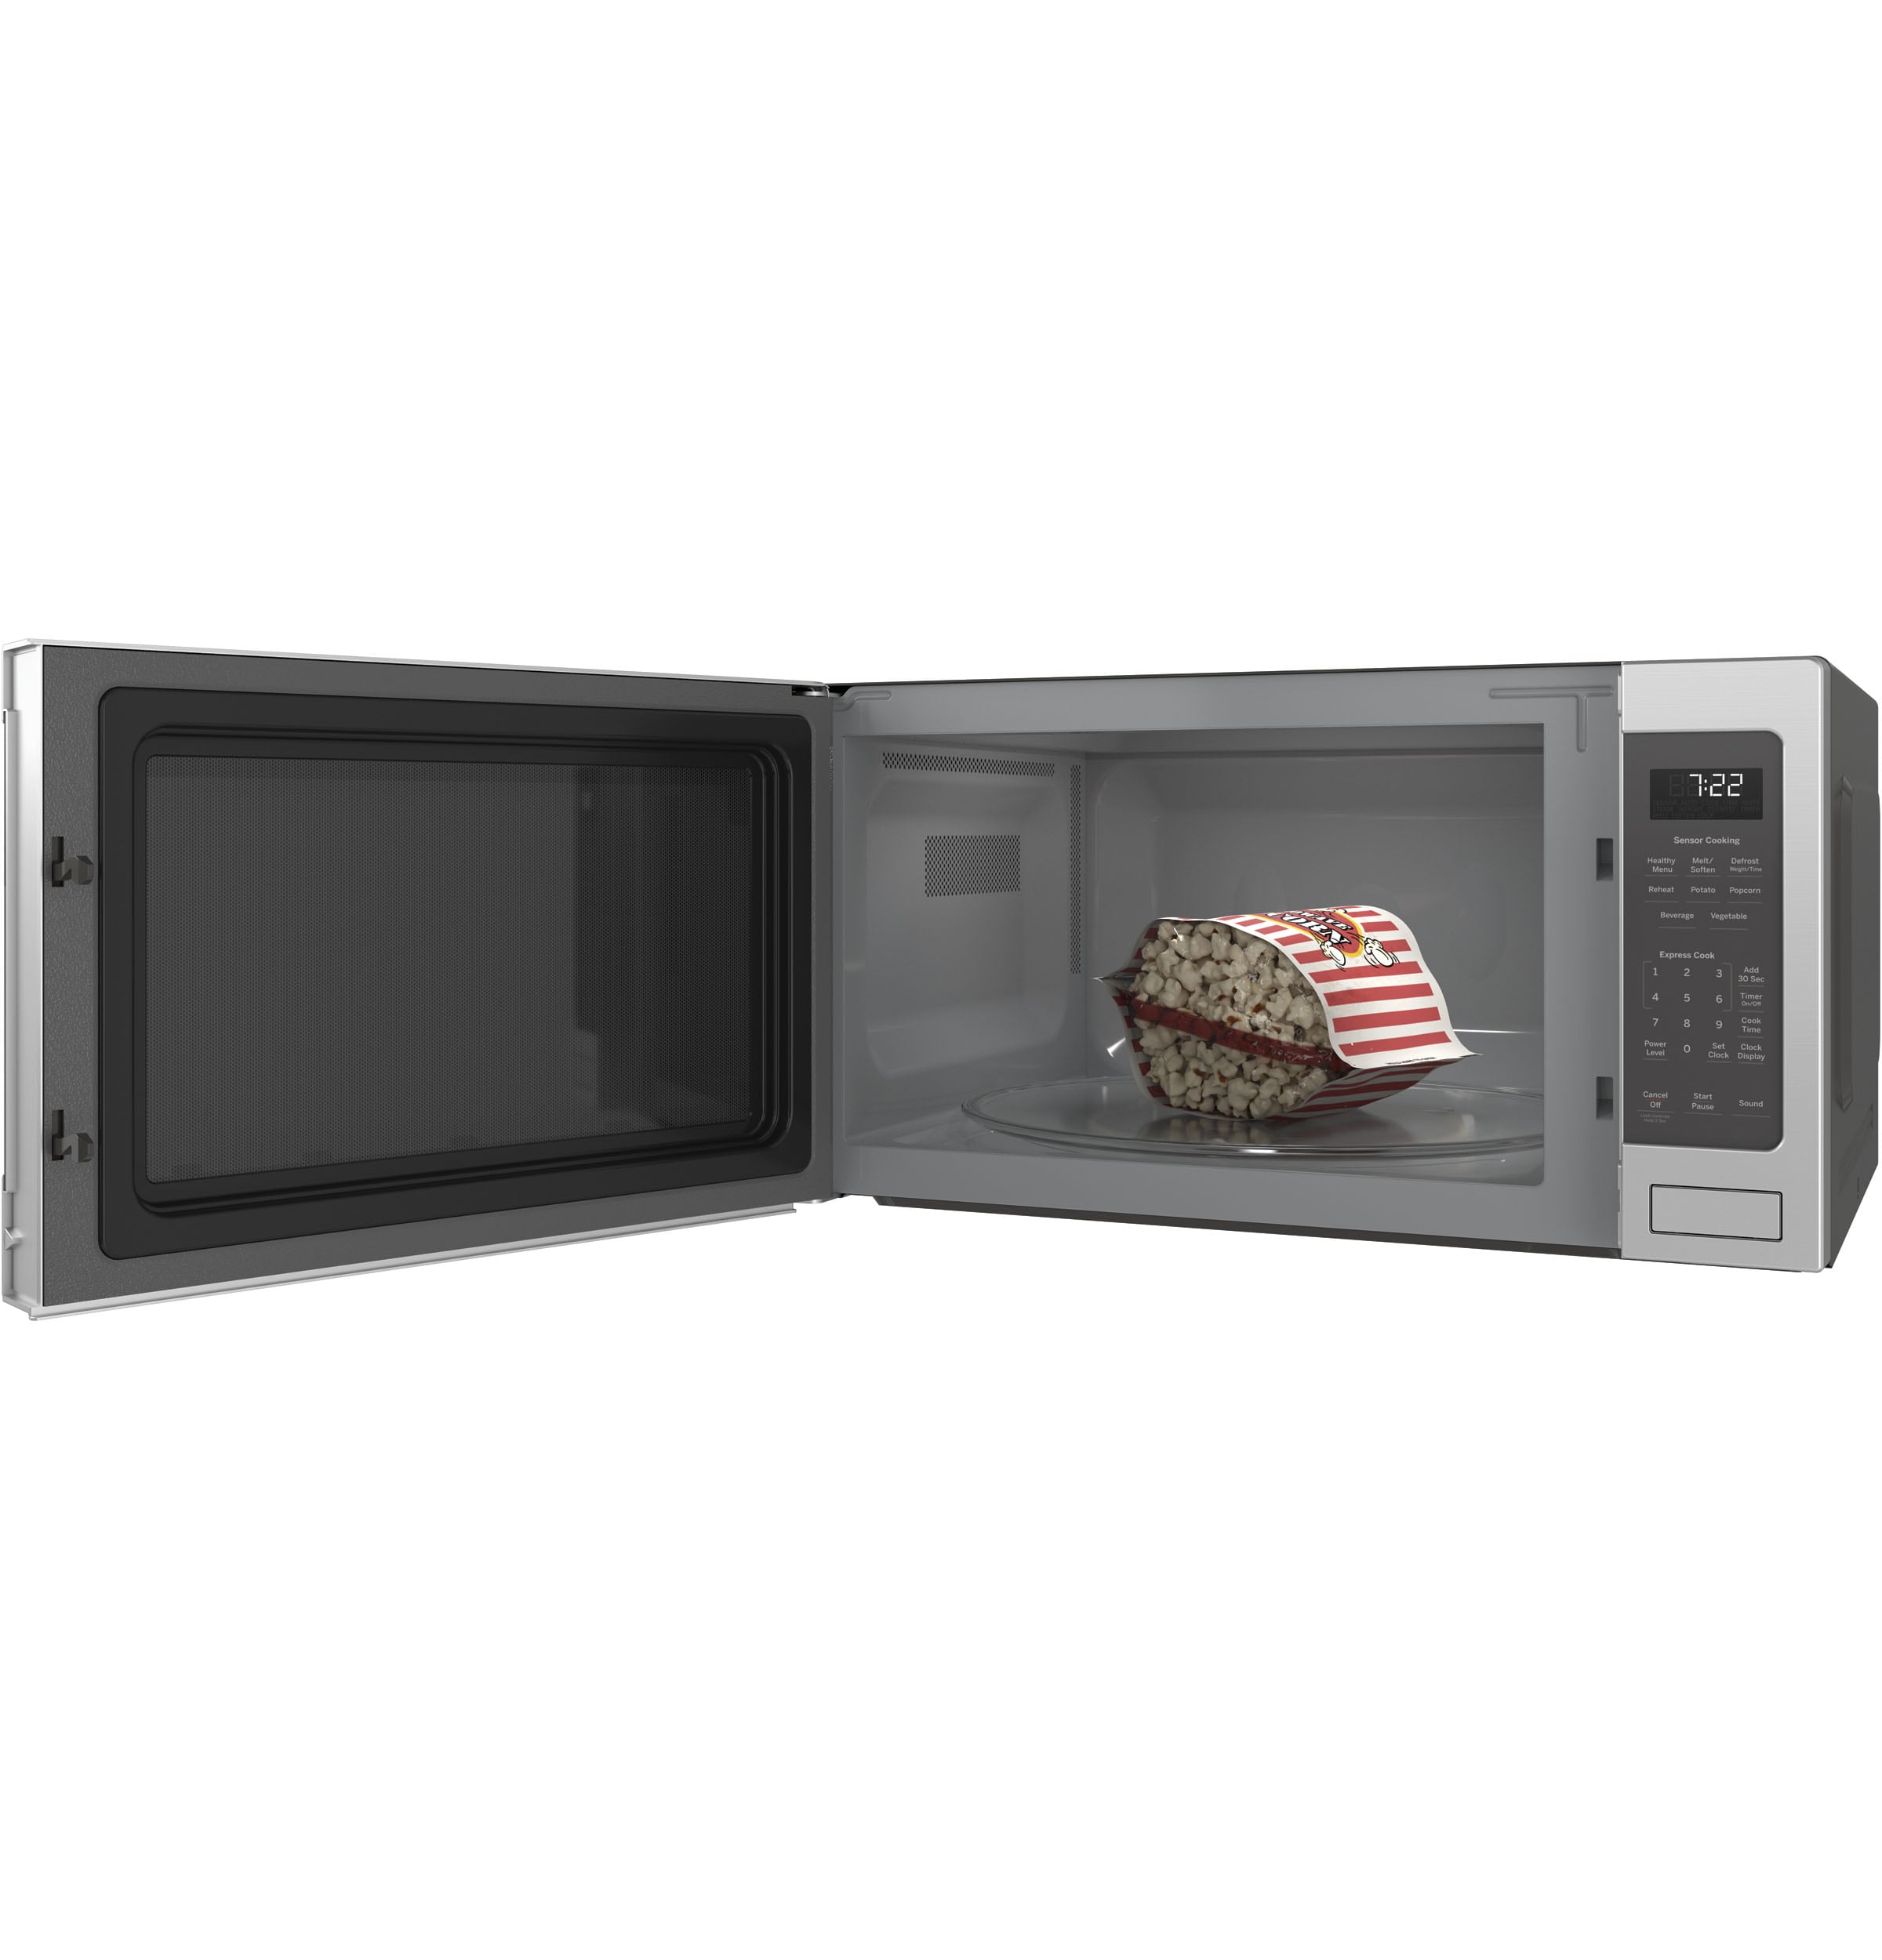 KSP Easystor Microwave Food Cover (Grey)